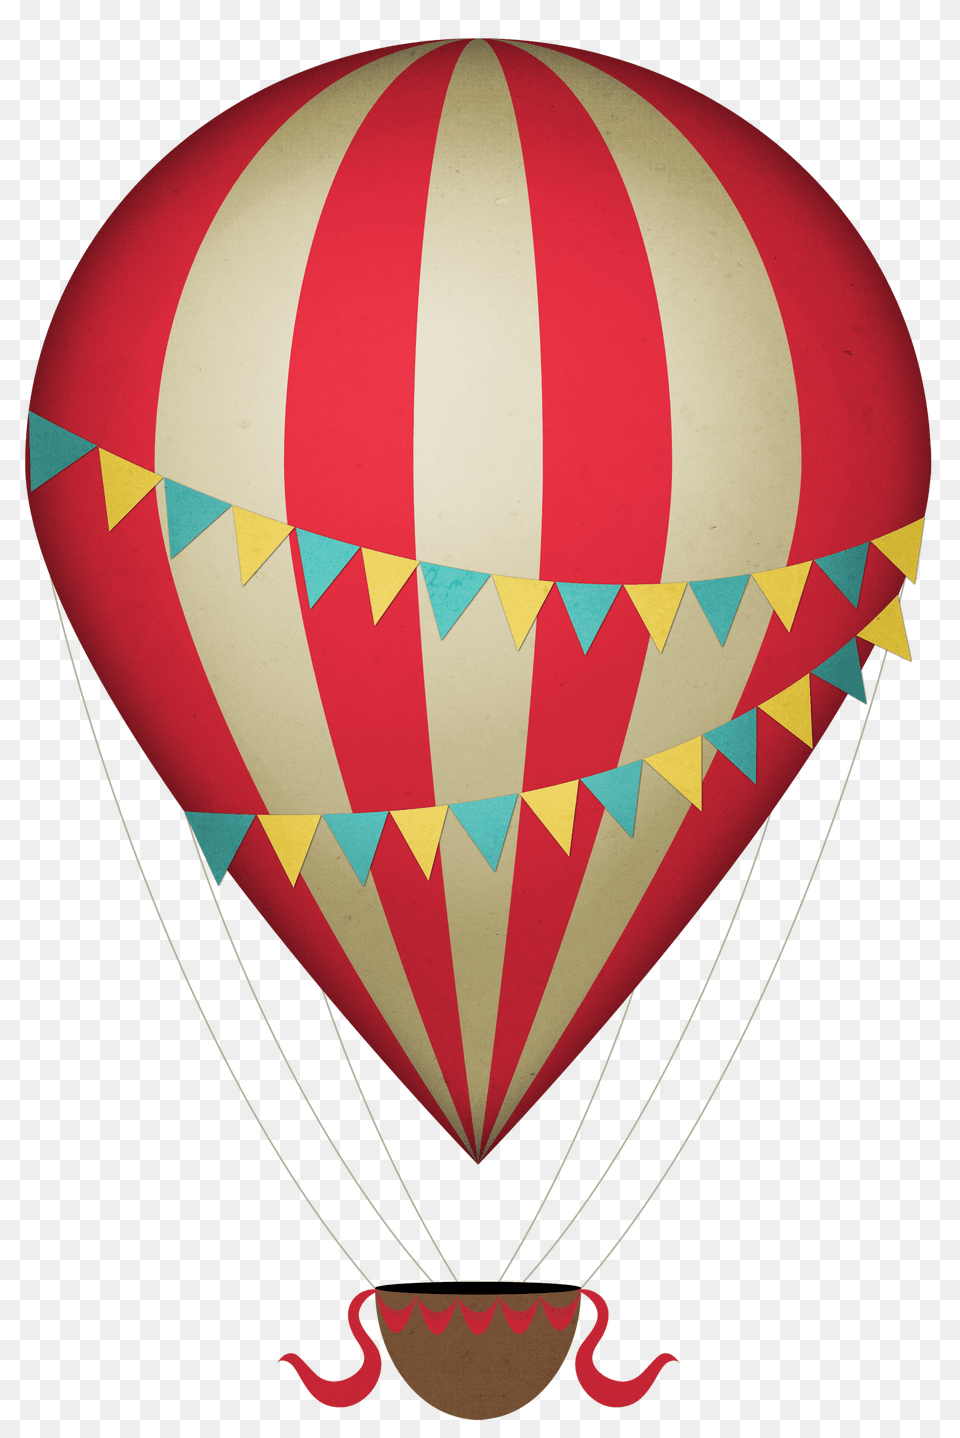 Vintage Clipart Hot Air Balloon, Aircraft, Hot Air Balloon, Transportation, Vehicle Free Png